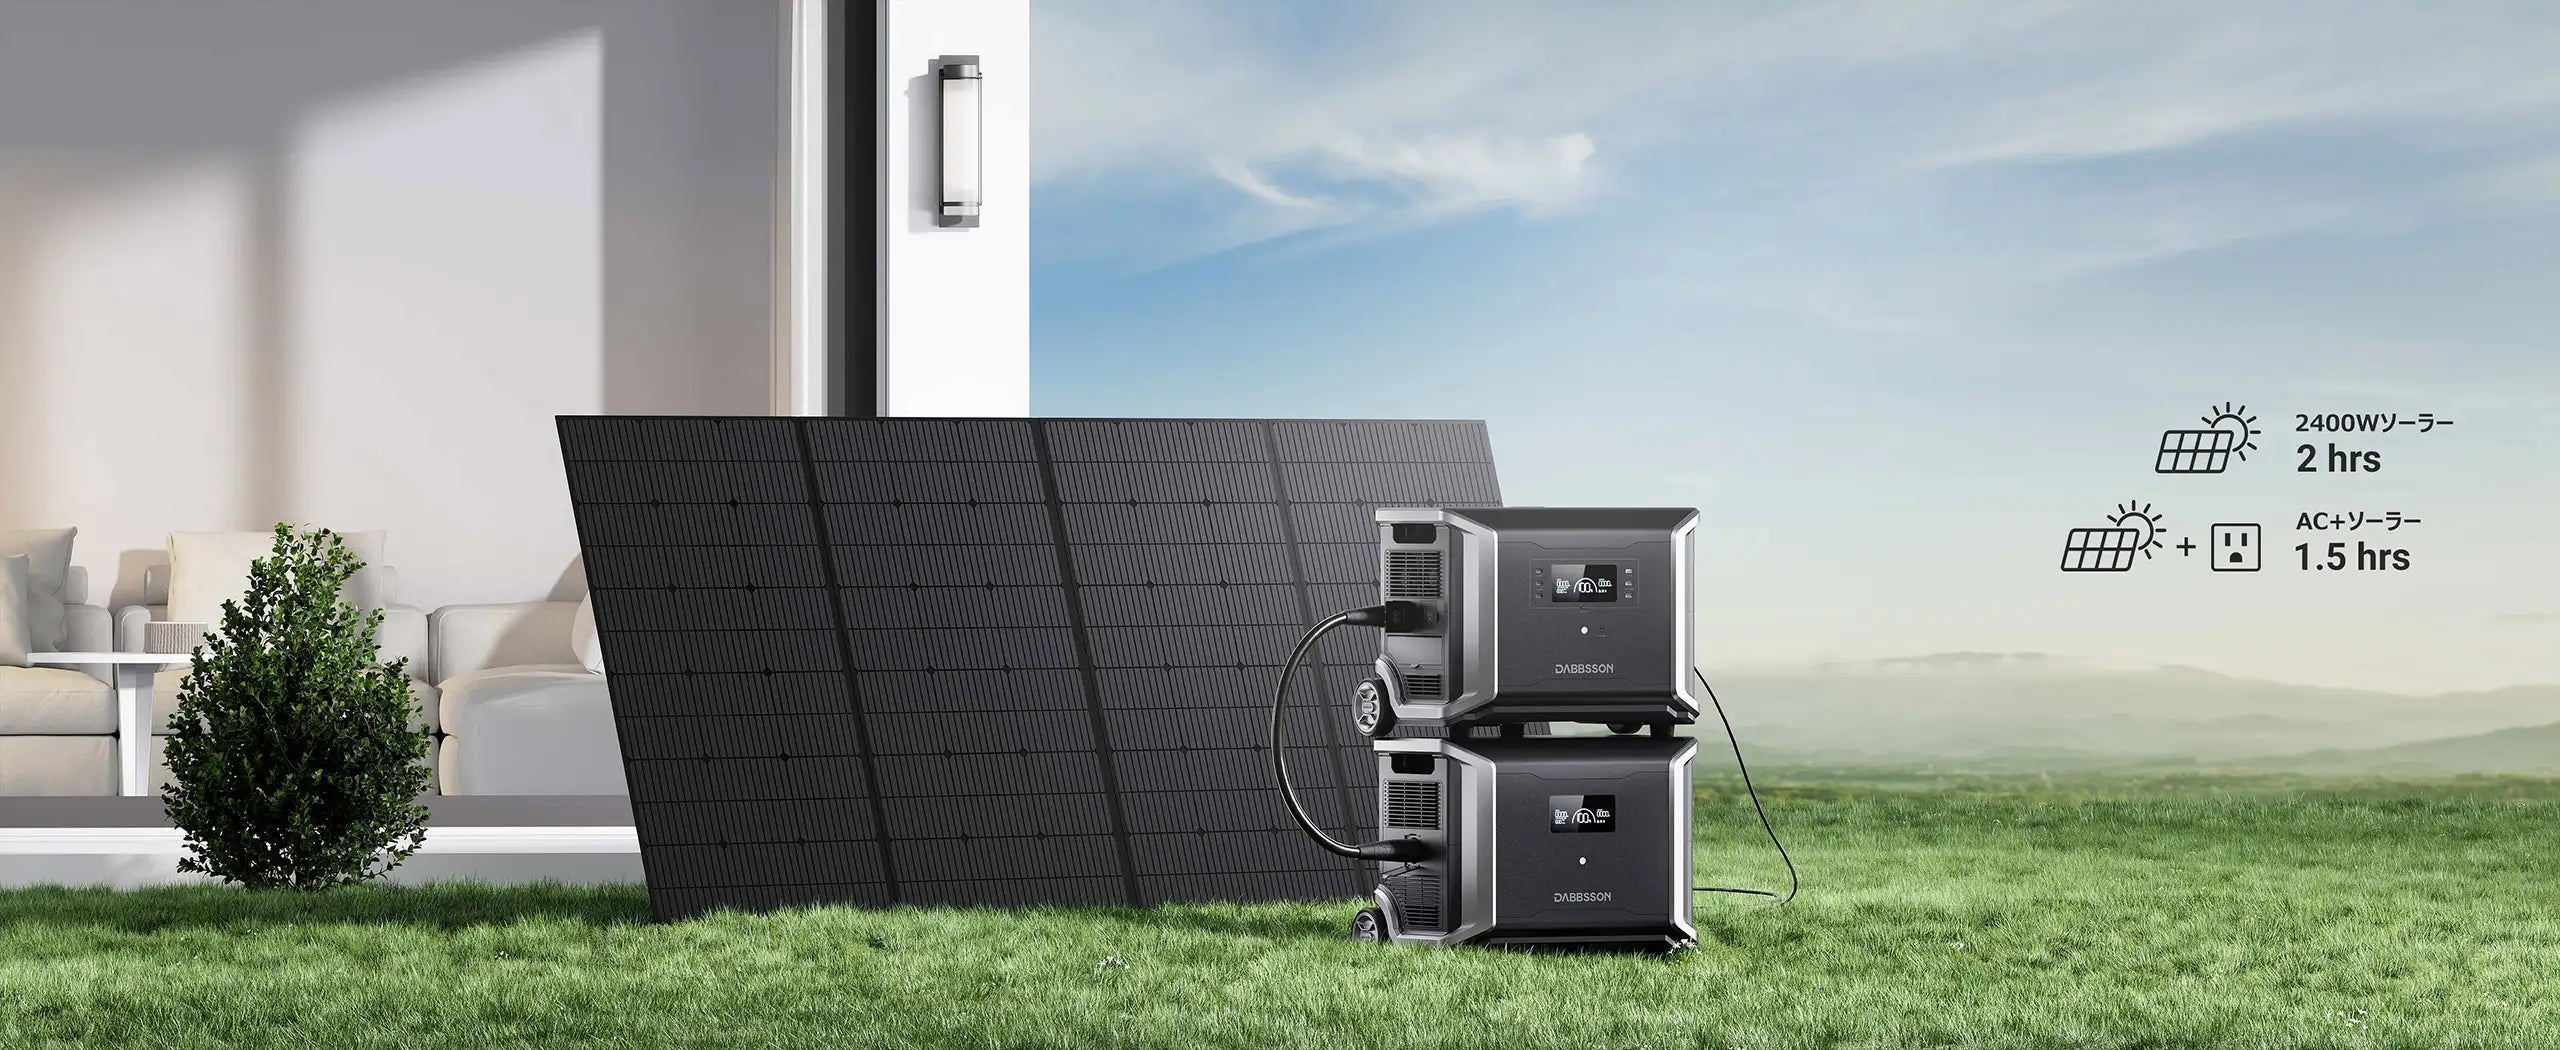 ポータブル電源+太陽光パネル、AC+ソーラー同時的に充電可能  AC+ソーラーを同時的に入力すると、 最大3400Wで1.5時間でフル充電可能